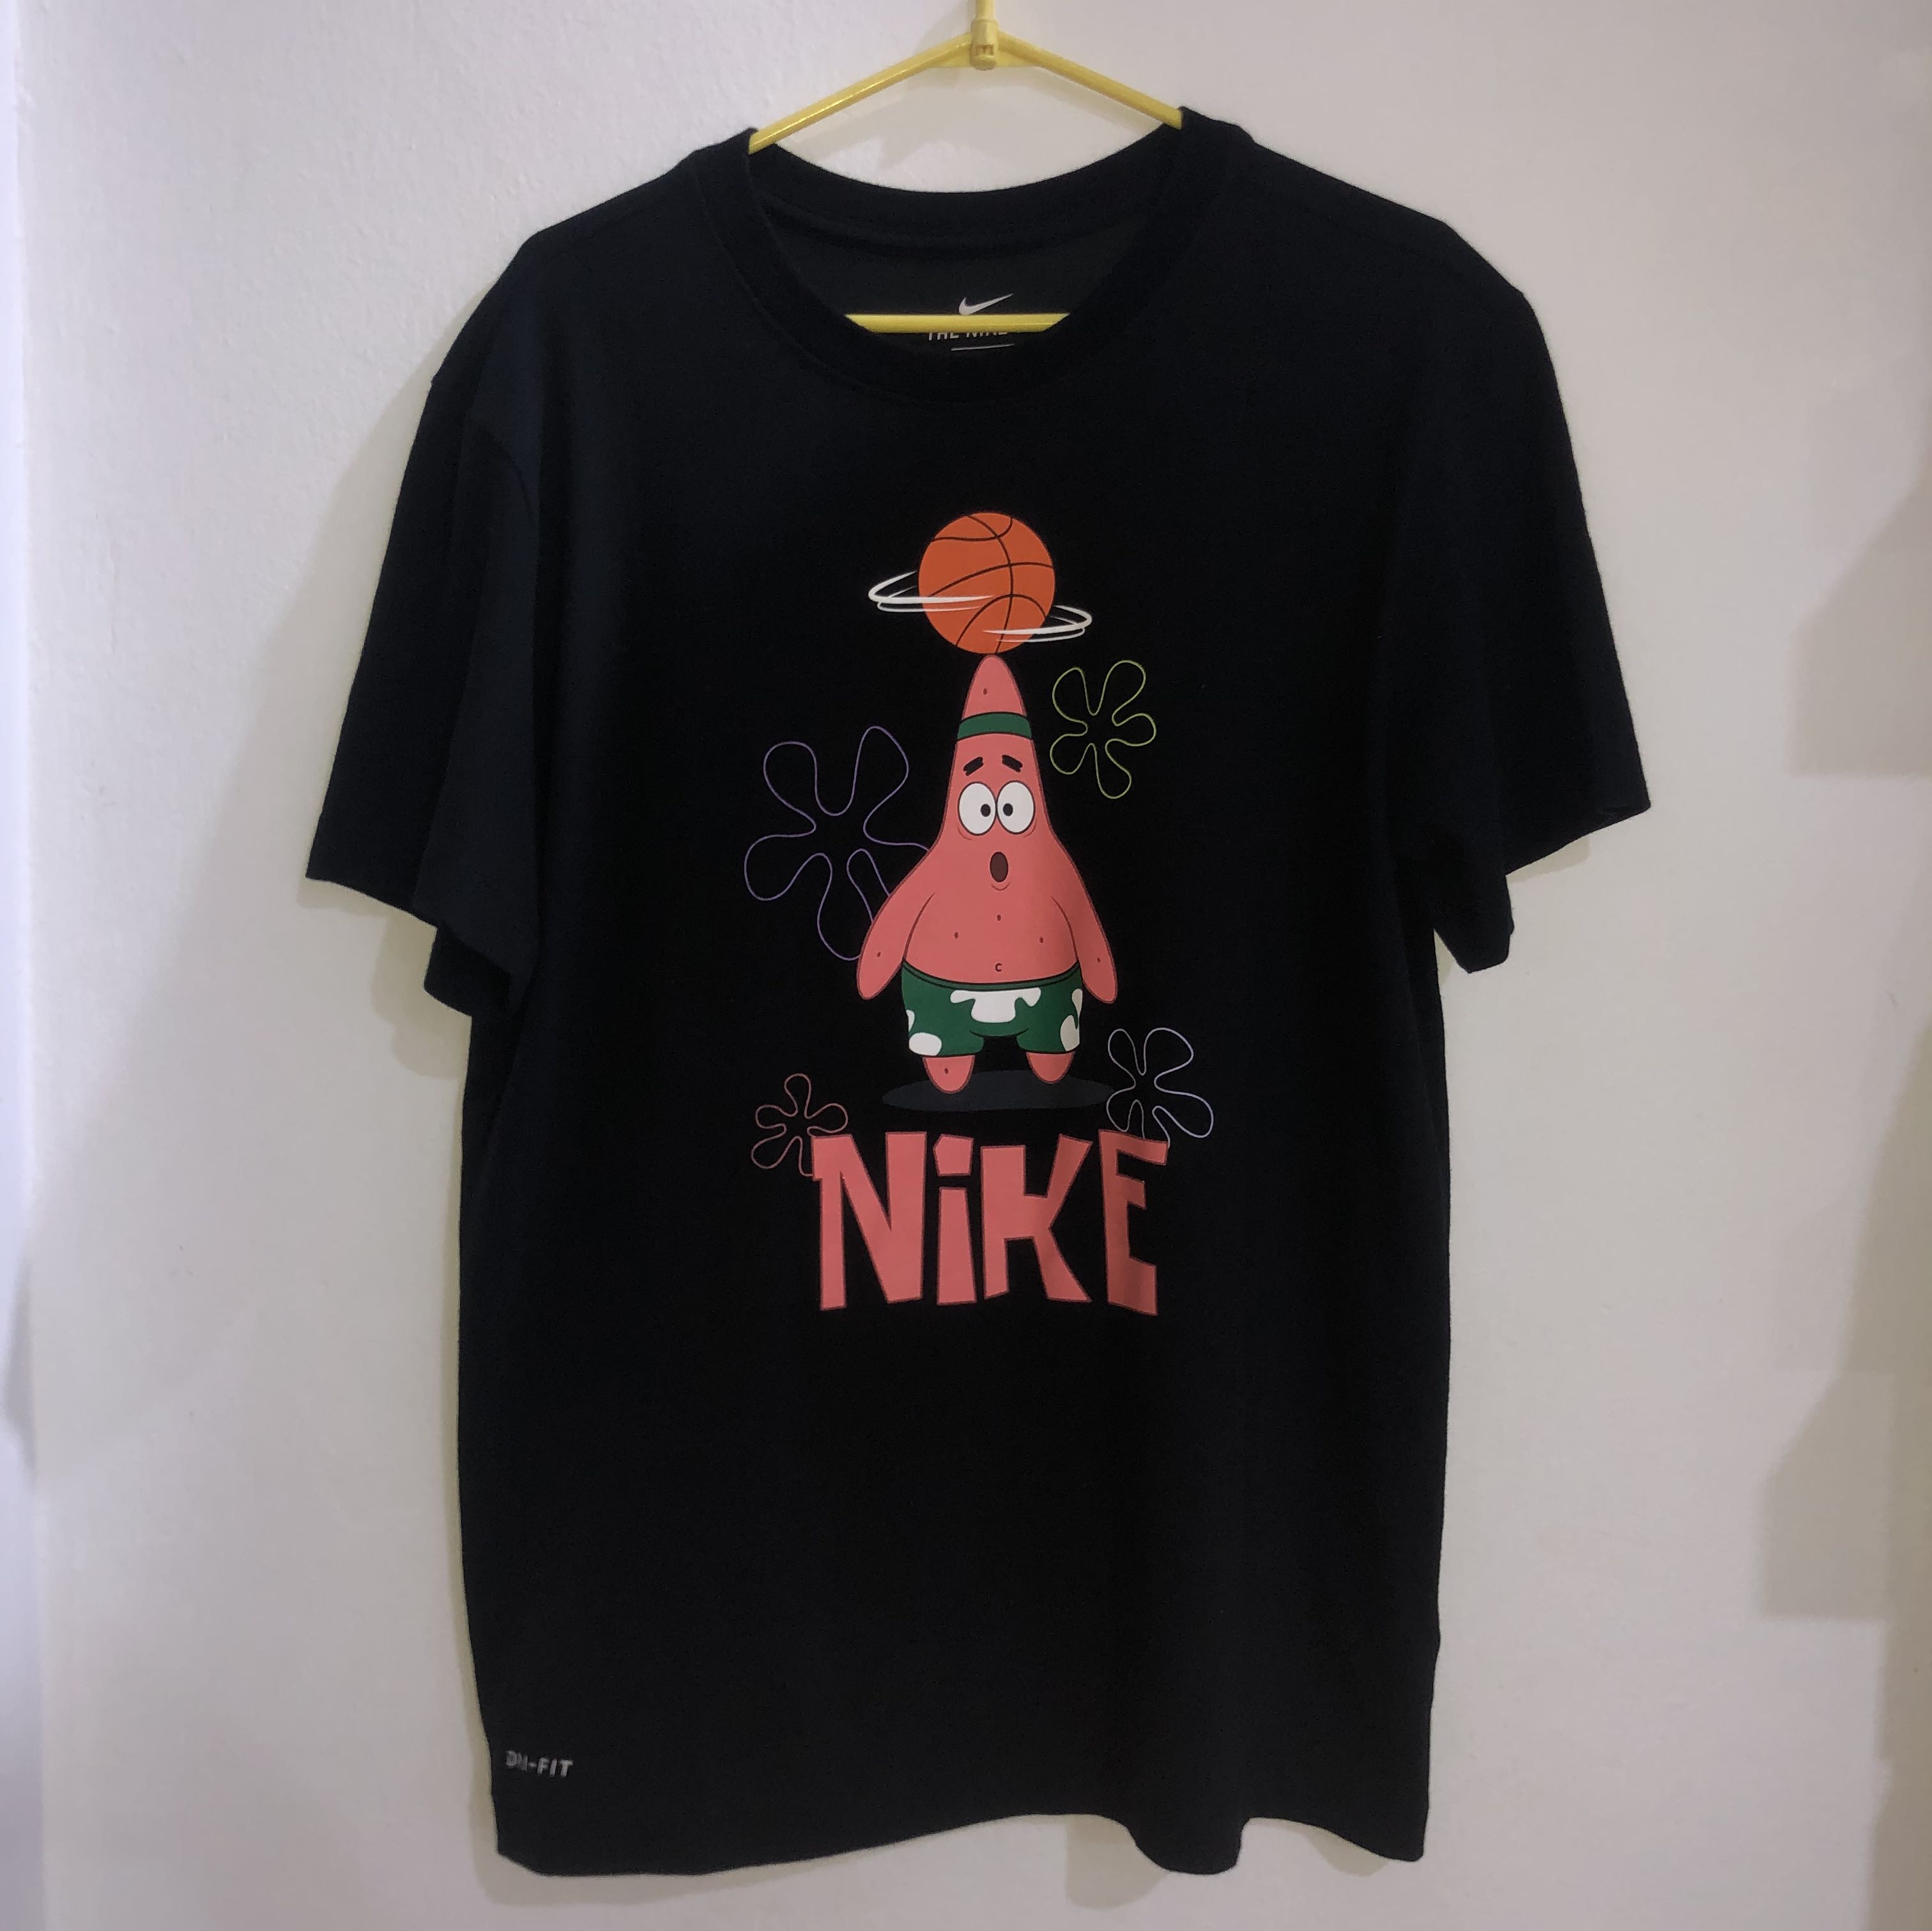 Monopolio Celsius Dormido Nike Kyrie x Spongebob Dri-Fit Patrick Star (Tee) Shirt, Men's Fashion,  Tops & Sets, Tshirts & Polo Shirts on Carousell